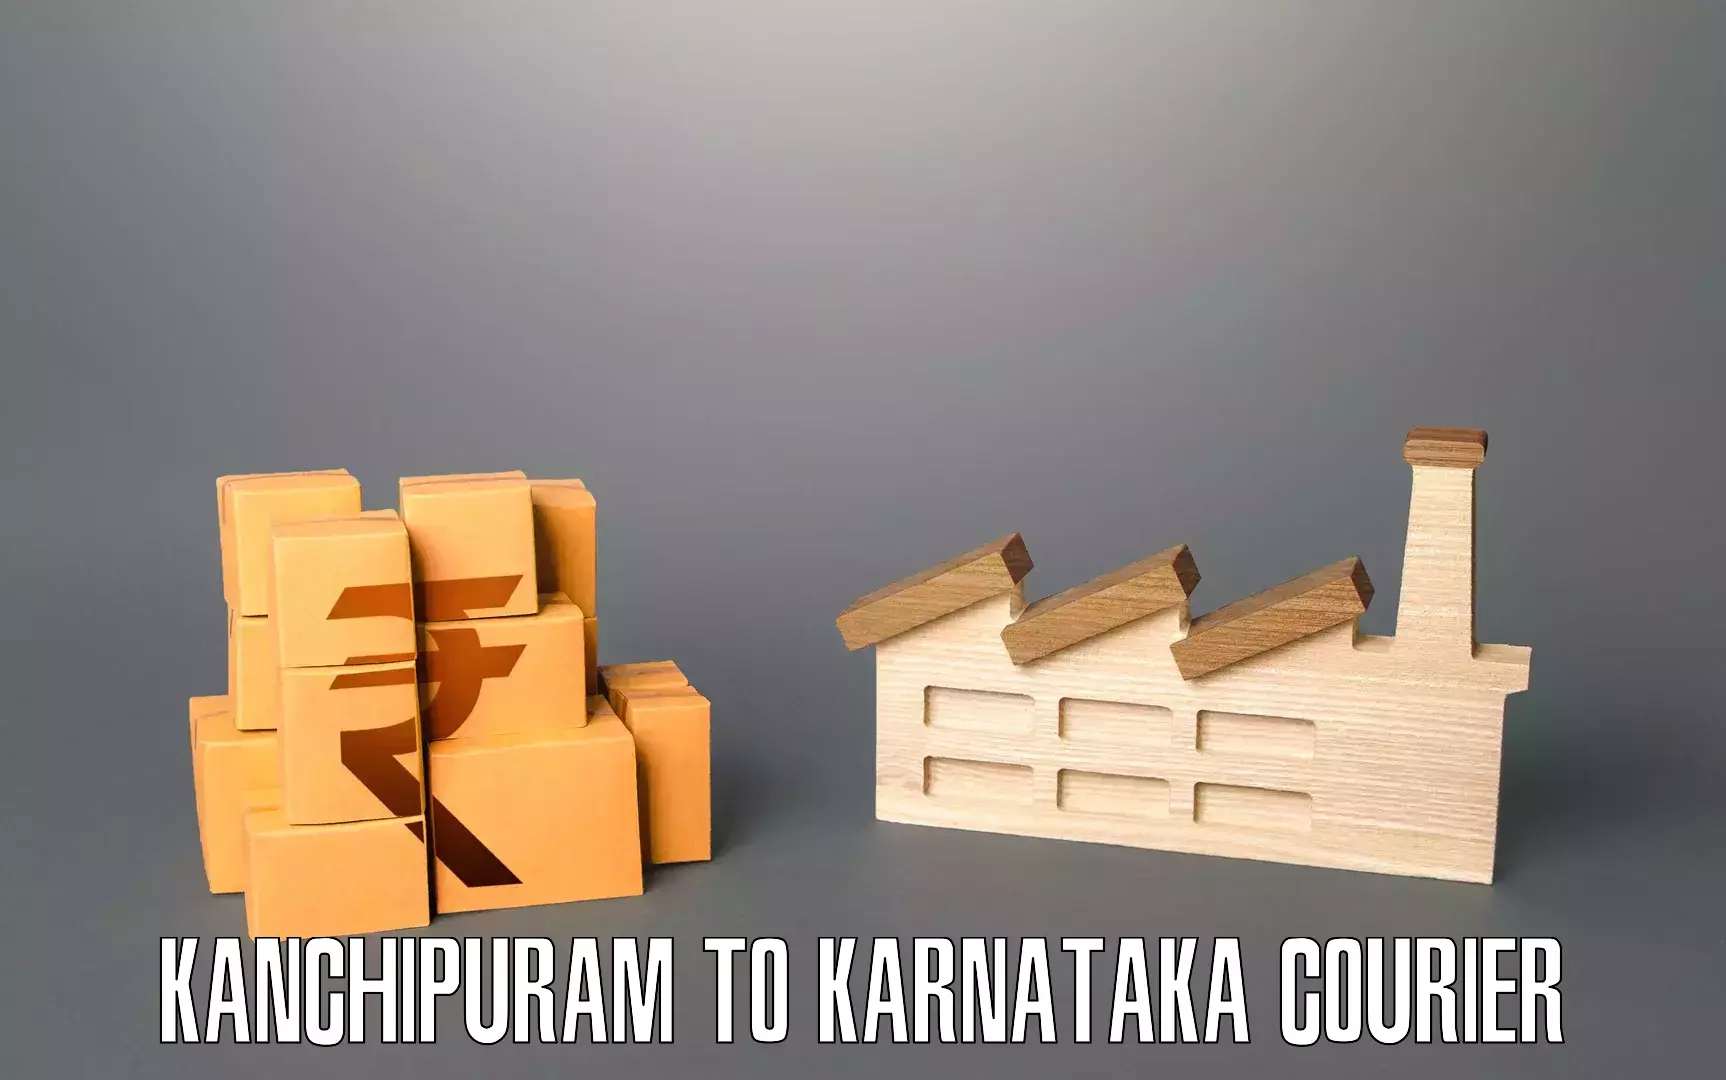 Full home relocation services Kanchipuram to Koppal